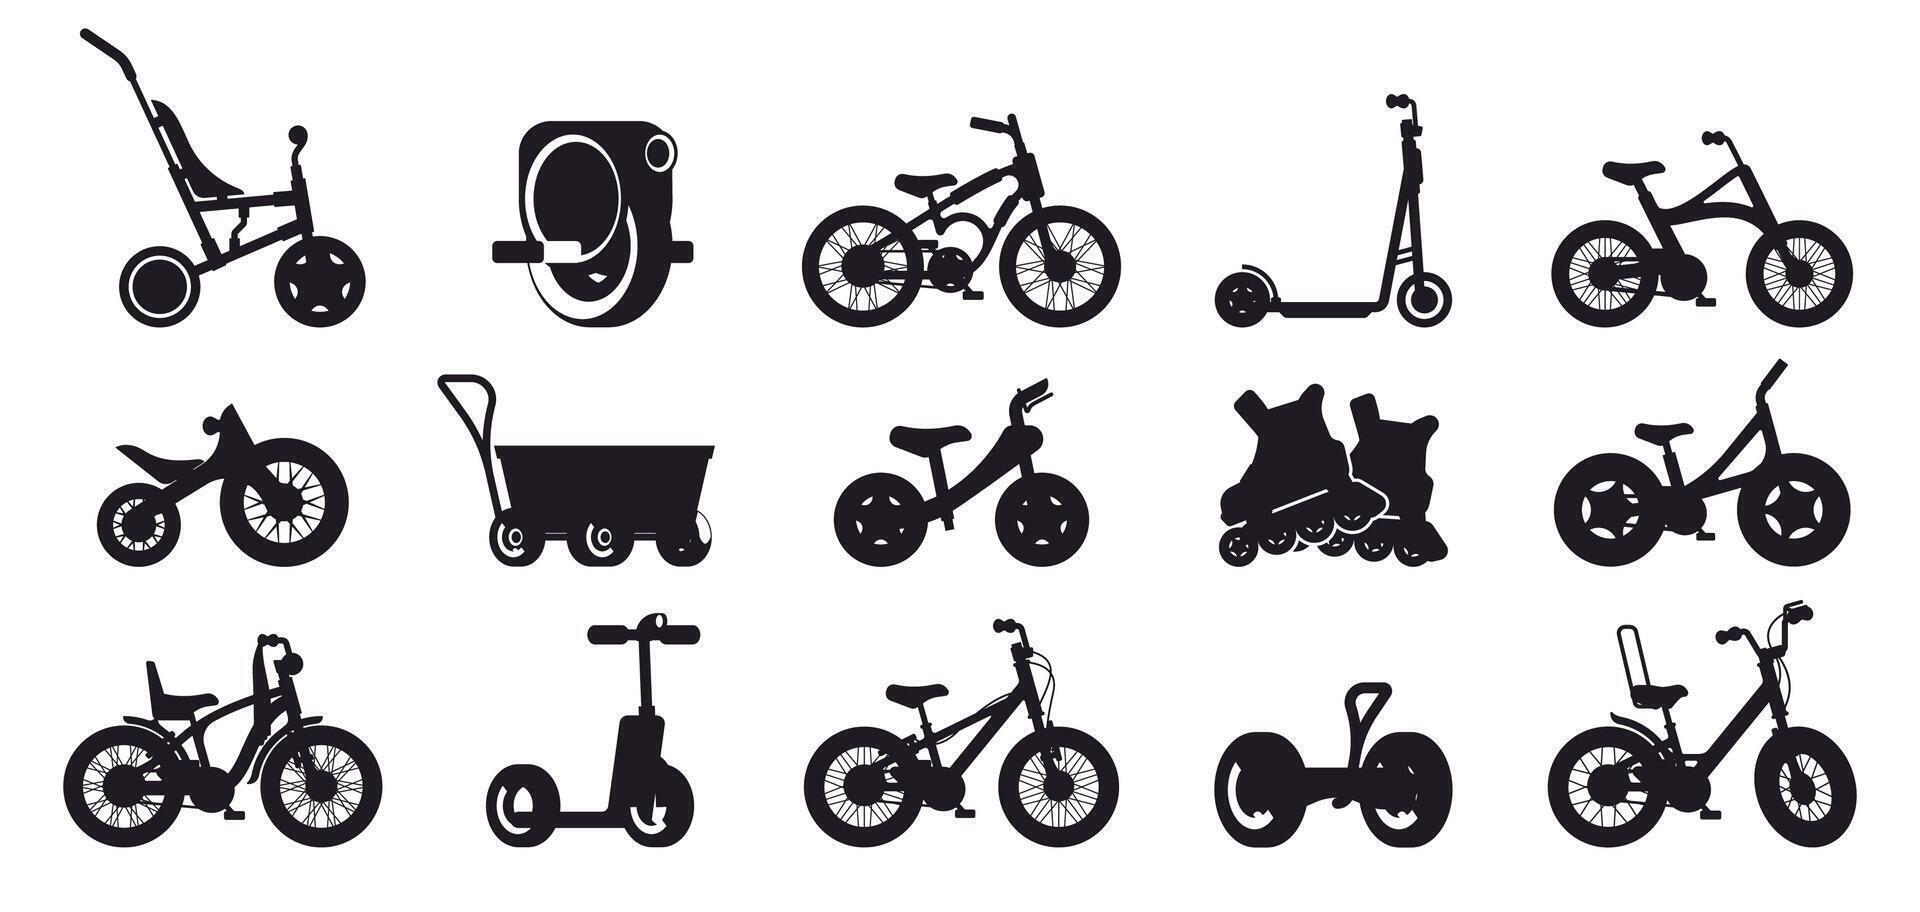 Kinder schwarz Fahrrad Symbol. Gliederung Silhouetten von anders Typen von Fahrrad zum Kinder Transport, Rennen und Stadt. Vektor isoliert Sammlung